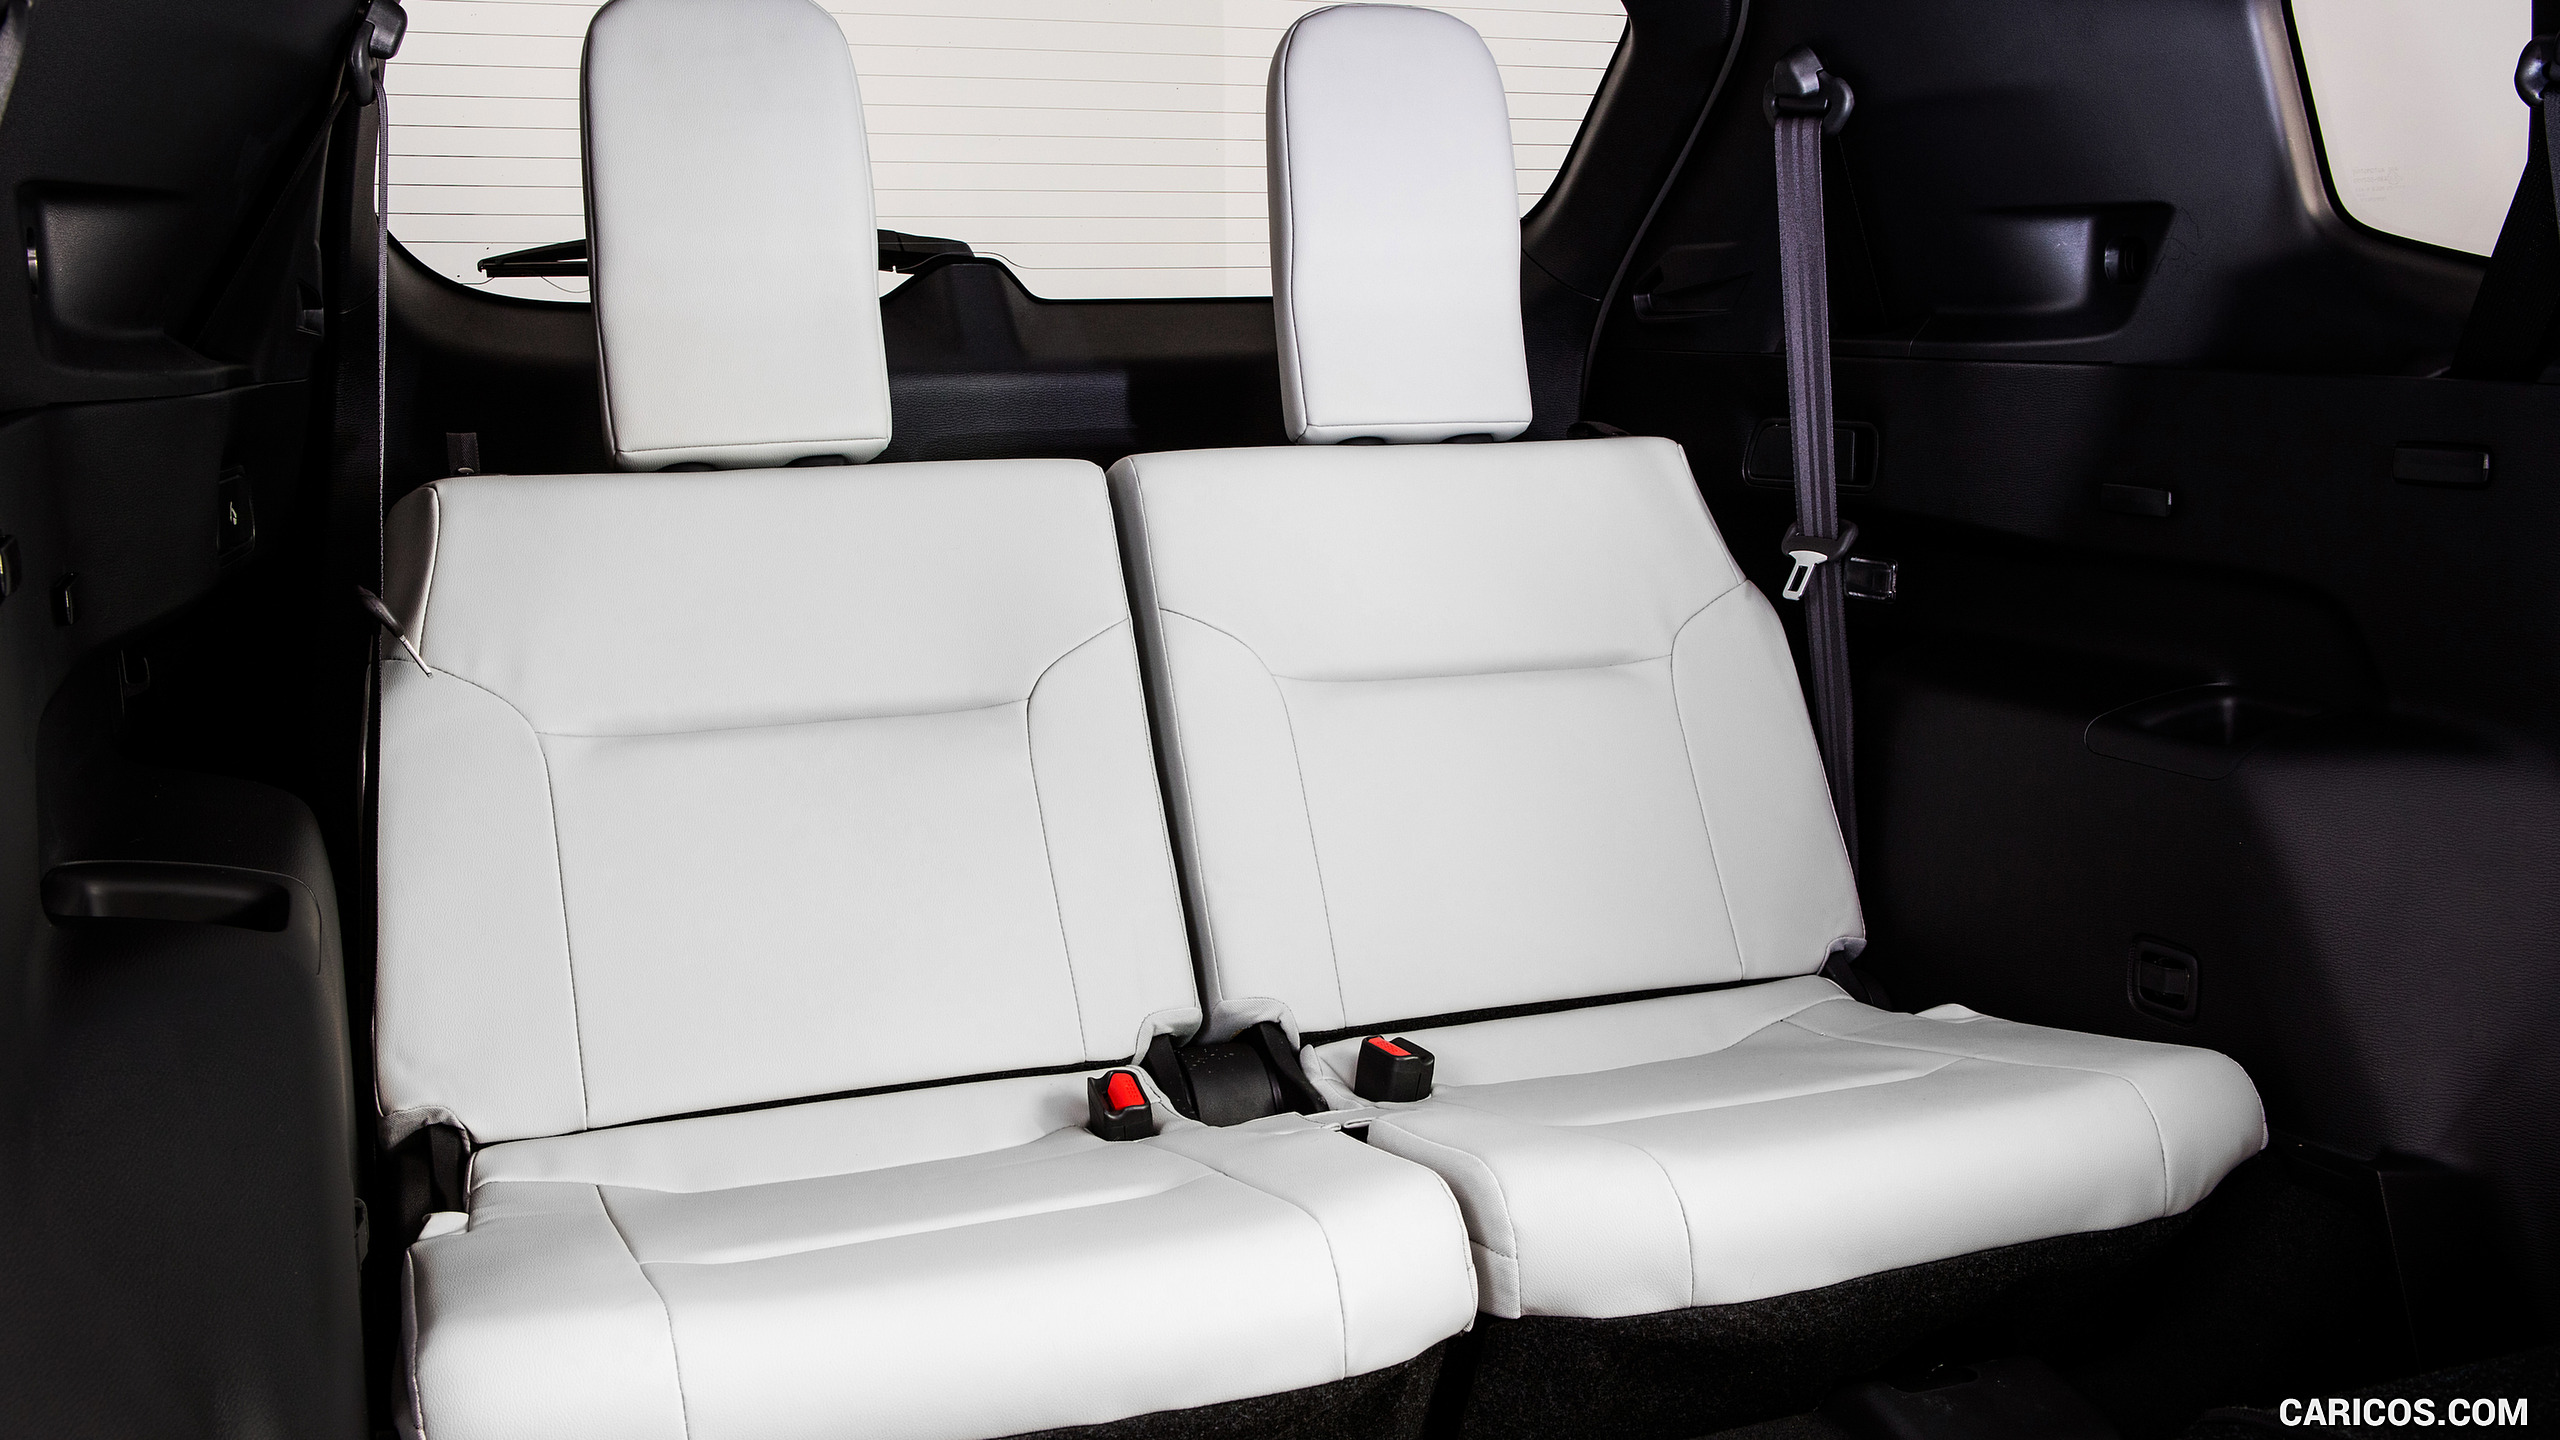 2022 Mitsubishi Outlander - Interior, Third Row Seats, #44 of 89